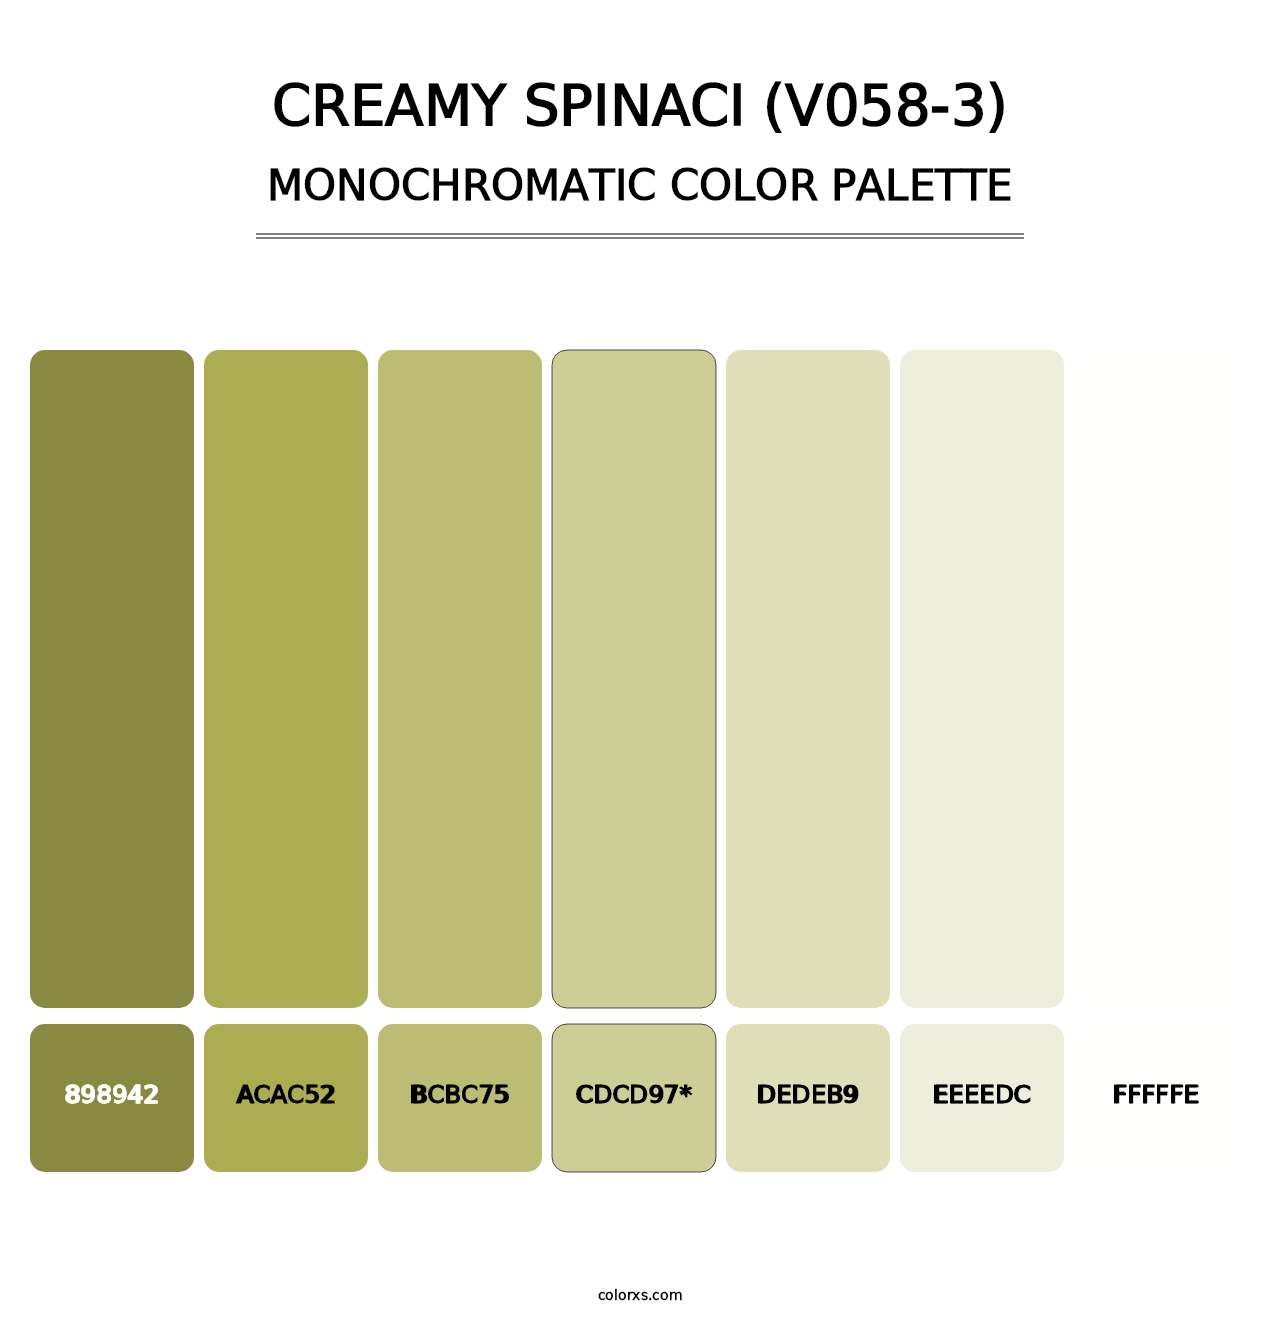 Creamy Spinaci (V058-3) - Monochromatic Color Palette